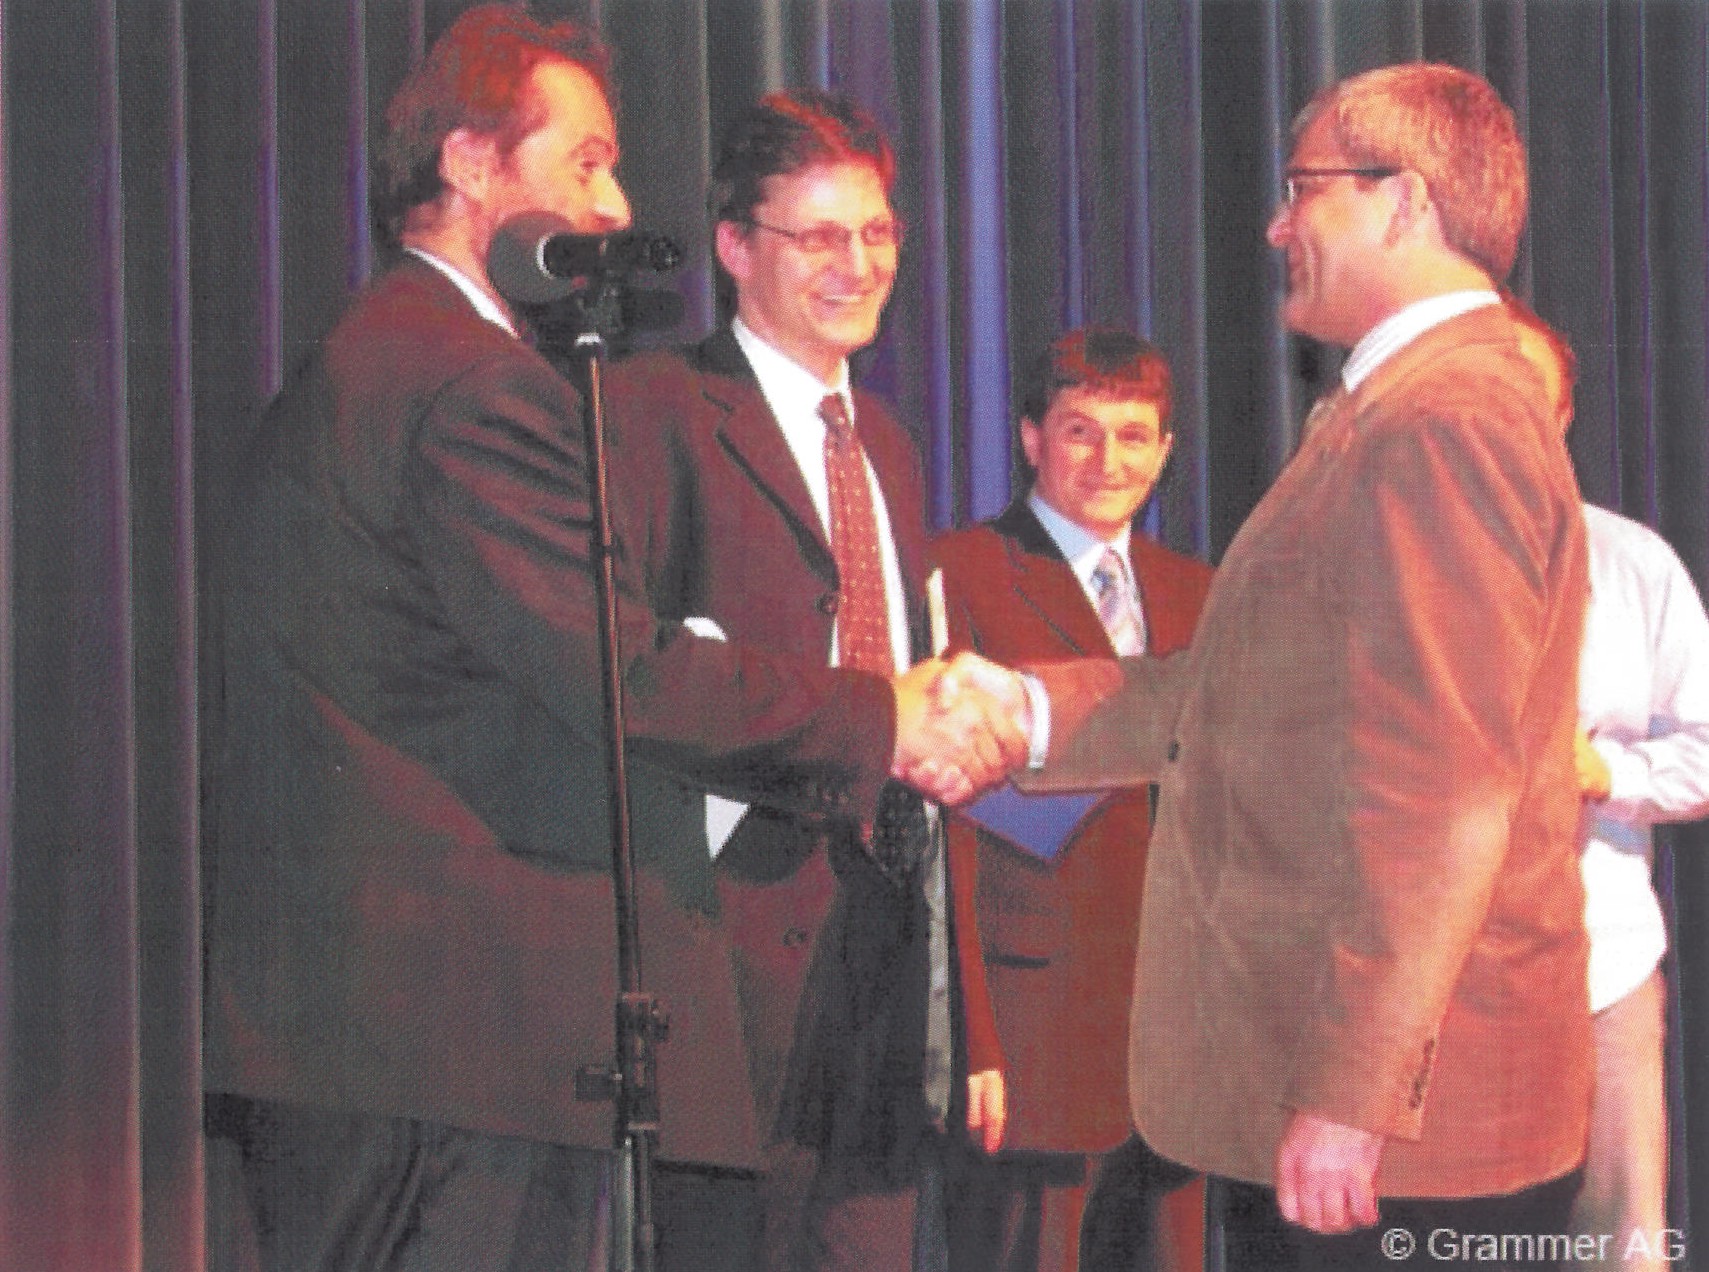 GRAMMER Awards 2004